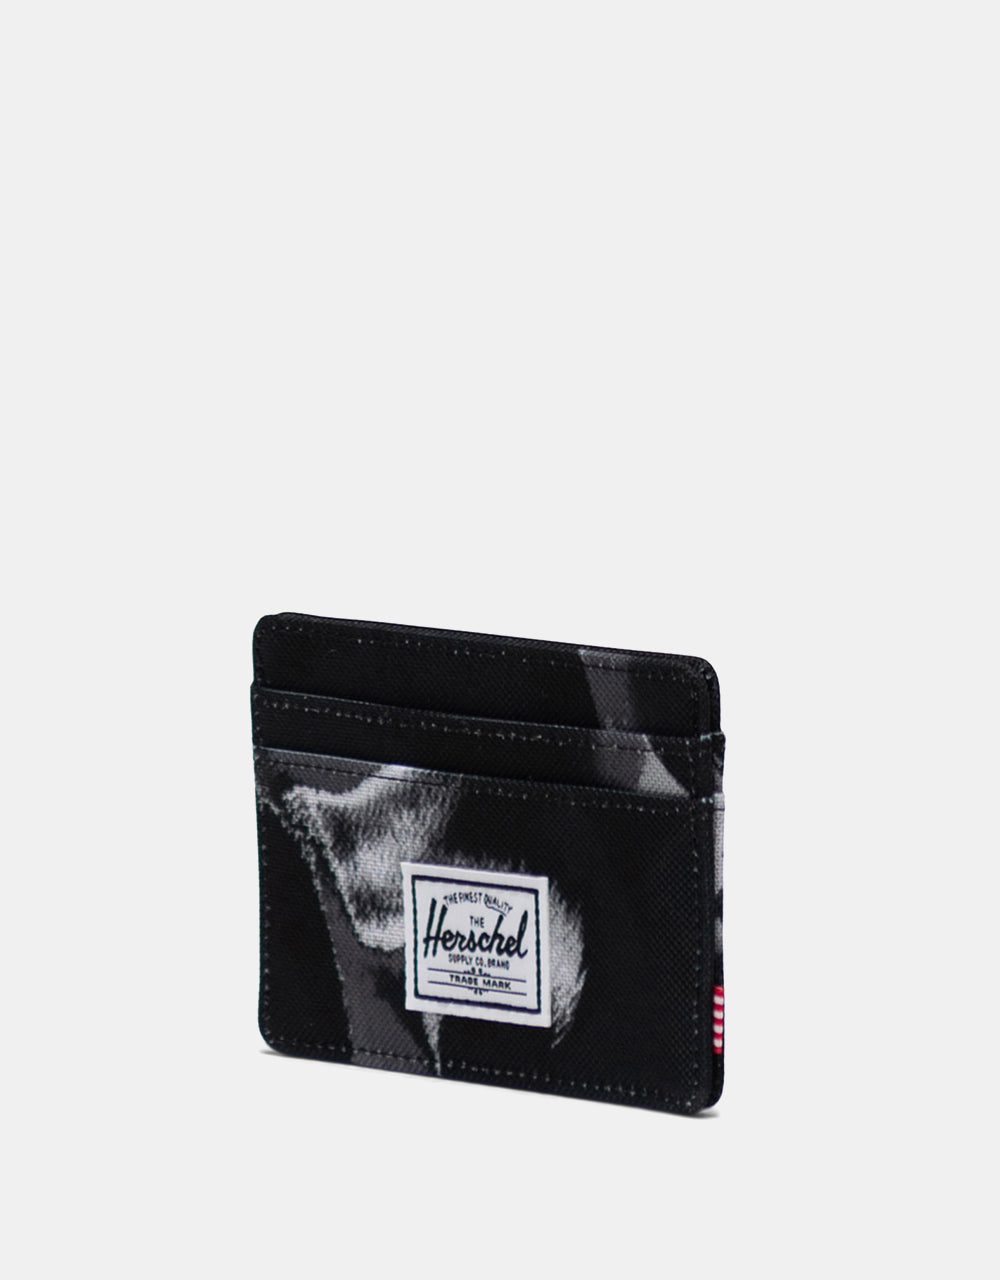 Herschel Supply Co. Charlie RFID Wallet - Dye Wash Black